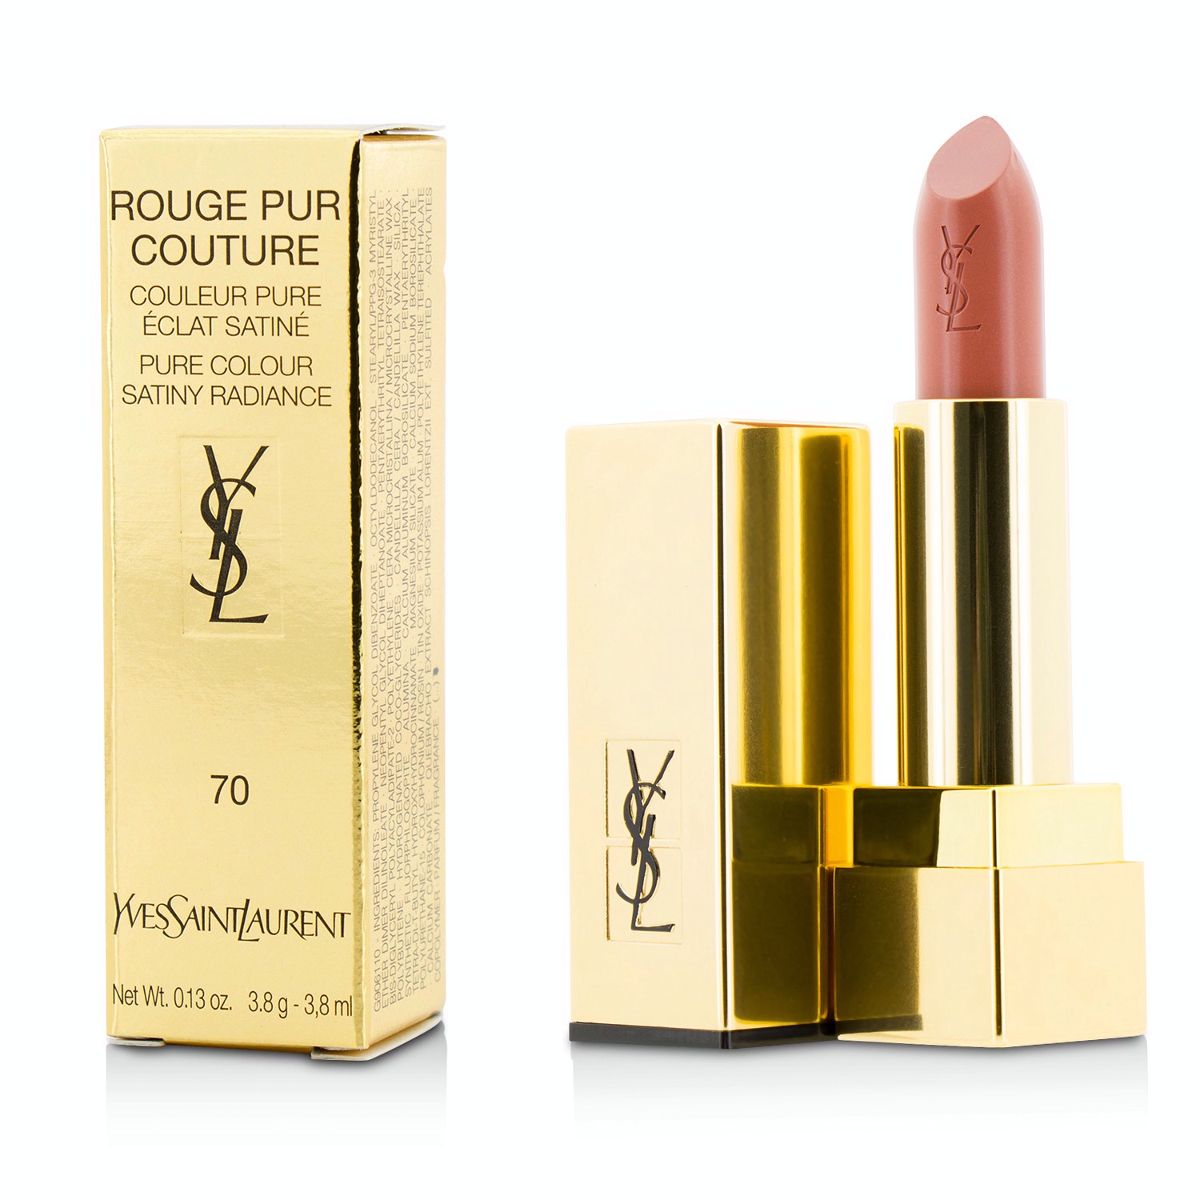 Rouge Pur Couture - #70 Le Nu Yves Saint Laurent Image